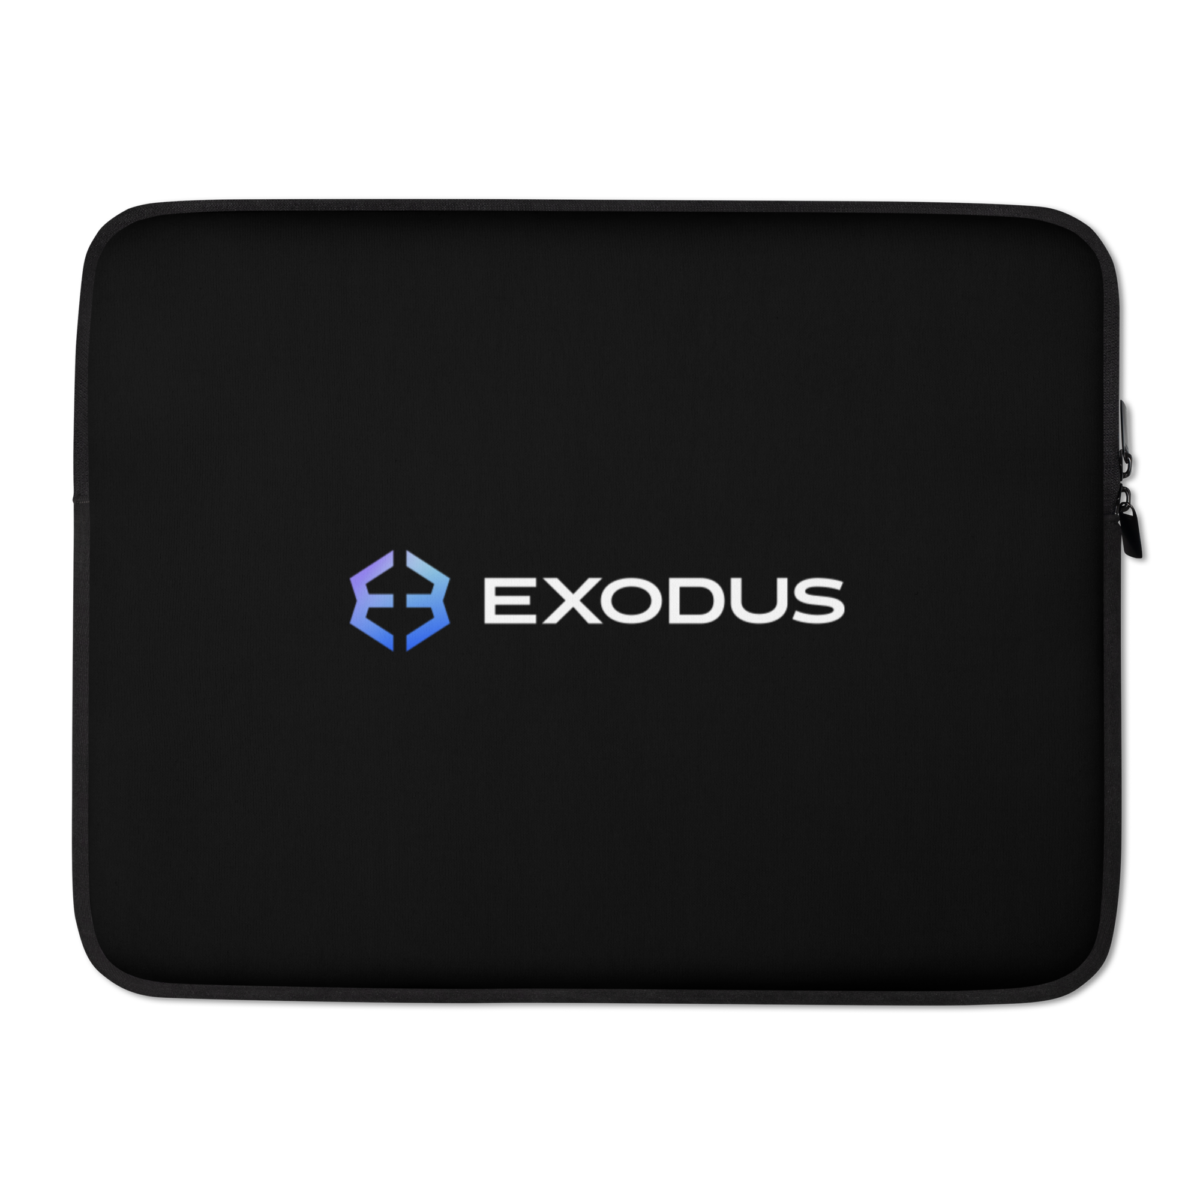 laptop sleeve 15 front 63172d7a8e211 - Exodus Laptop Sleeve